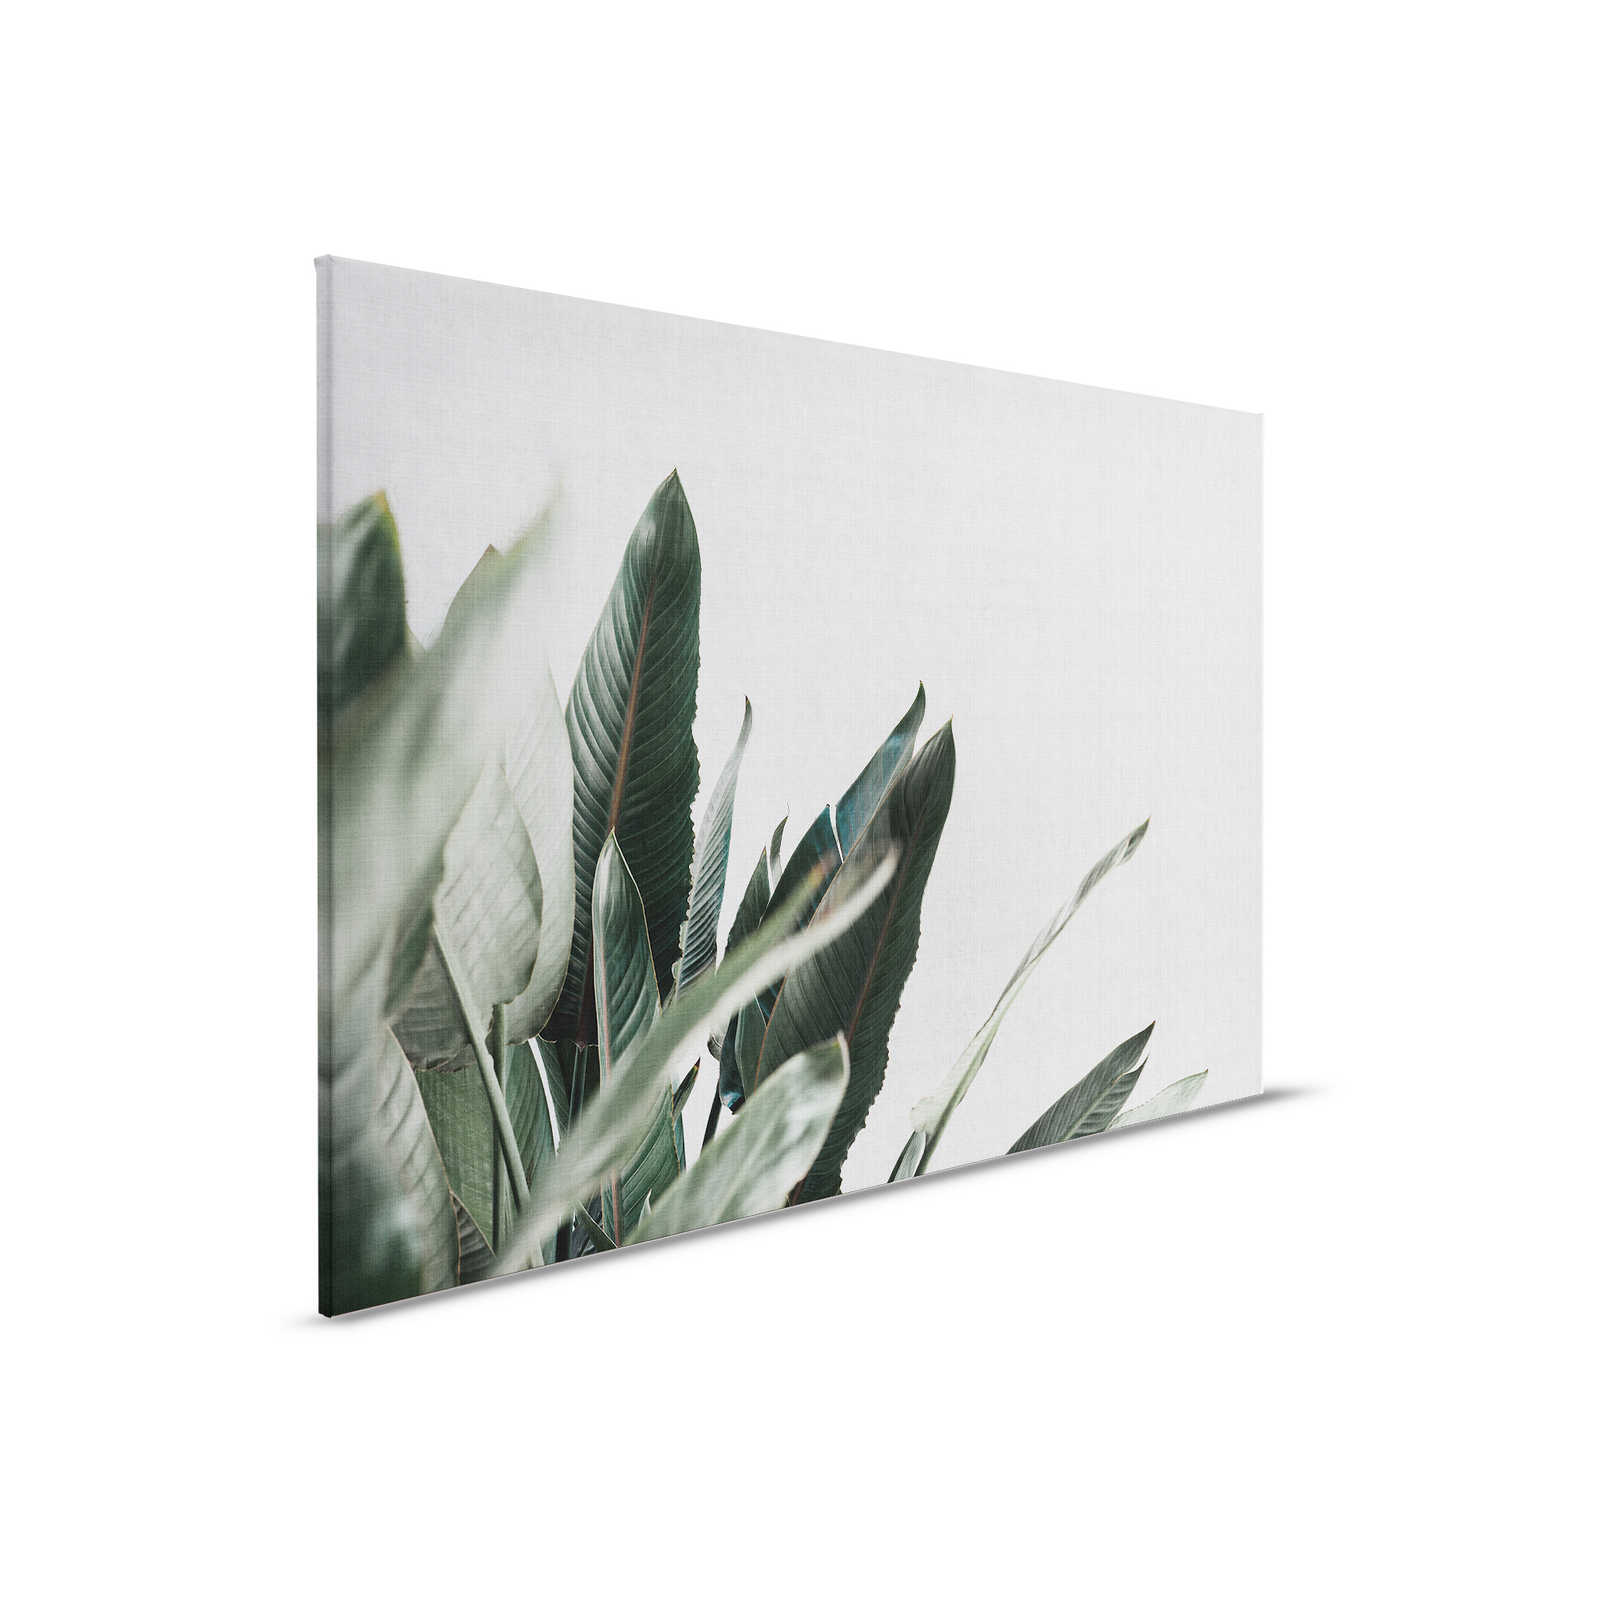 Giungla urbana 1 - Quadro su tela con foglie di palma in lino naturale - 0,90 m x 0,60 m
